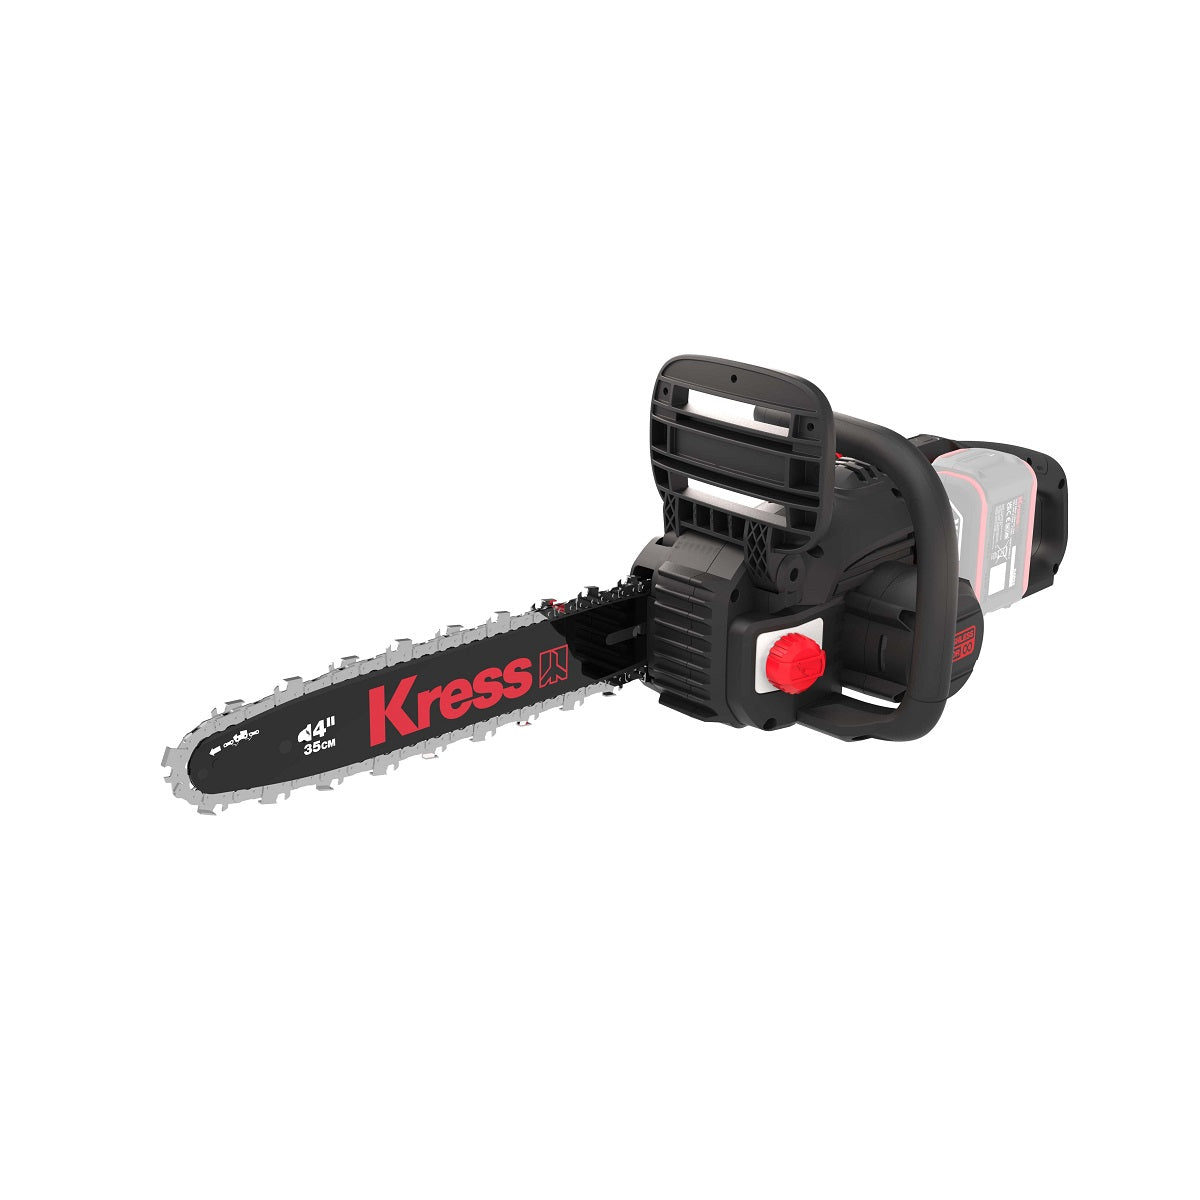 Kress KG346.9 40V 35cm Brushless Chainsaw - Tool Only